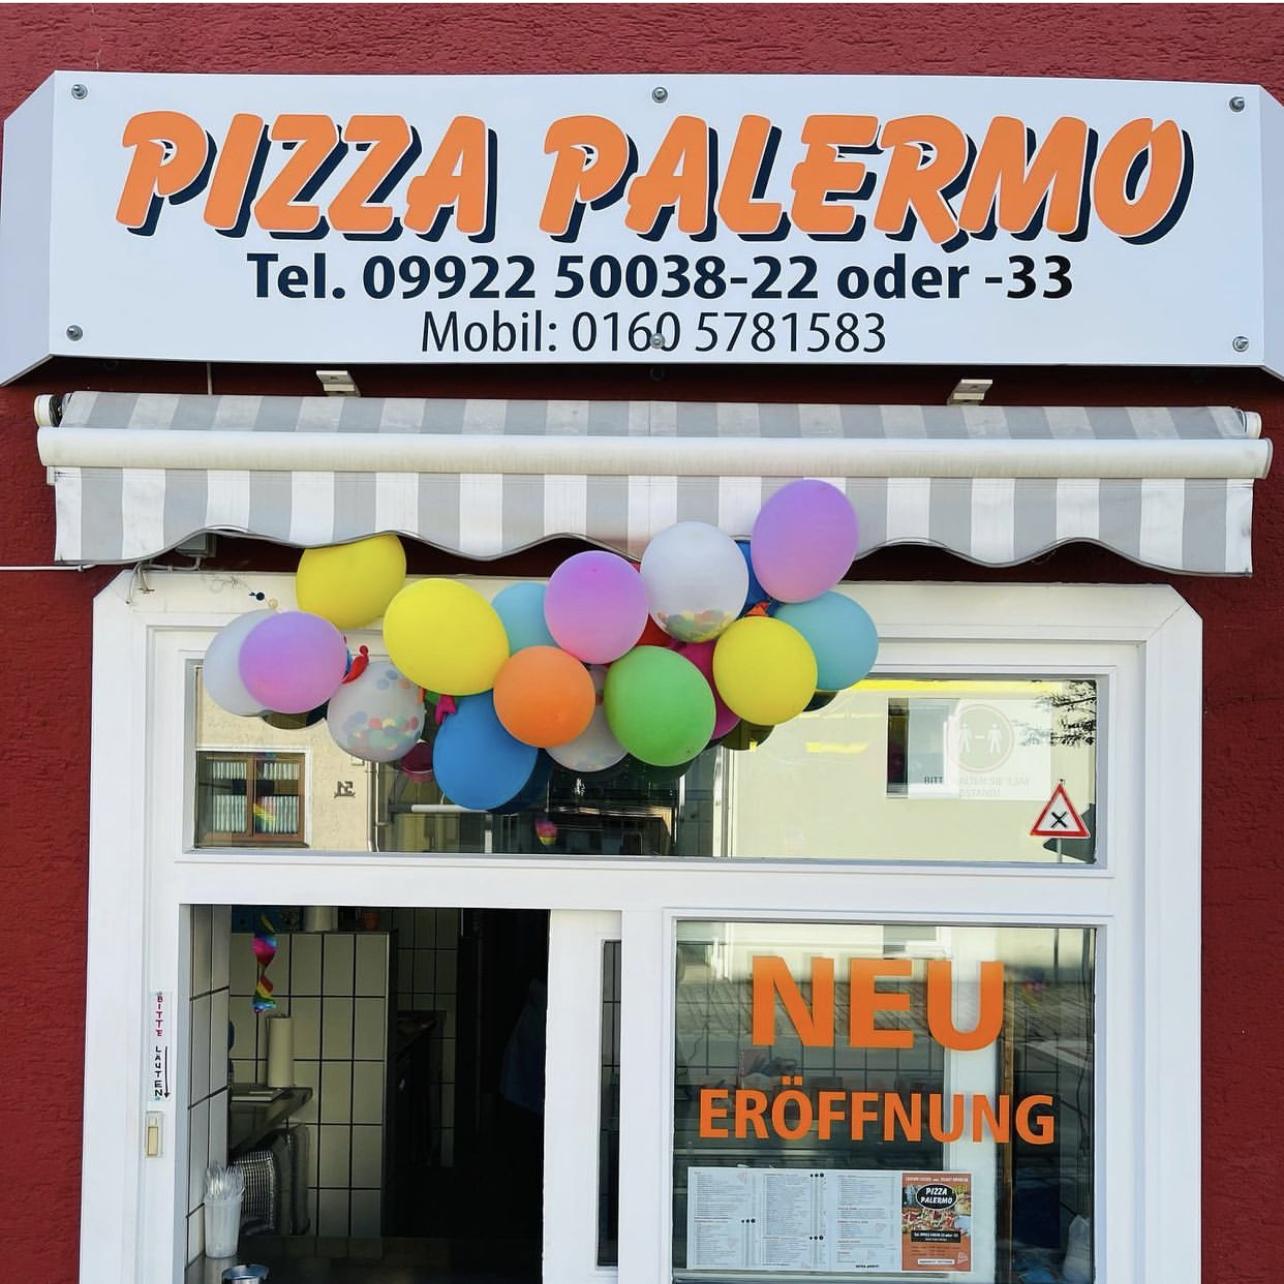 Restaurant "Pizza Palermo" in Zwiesel